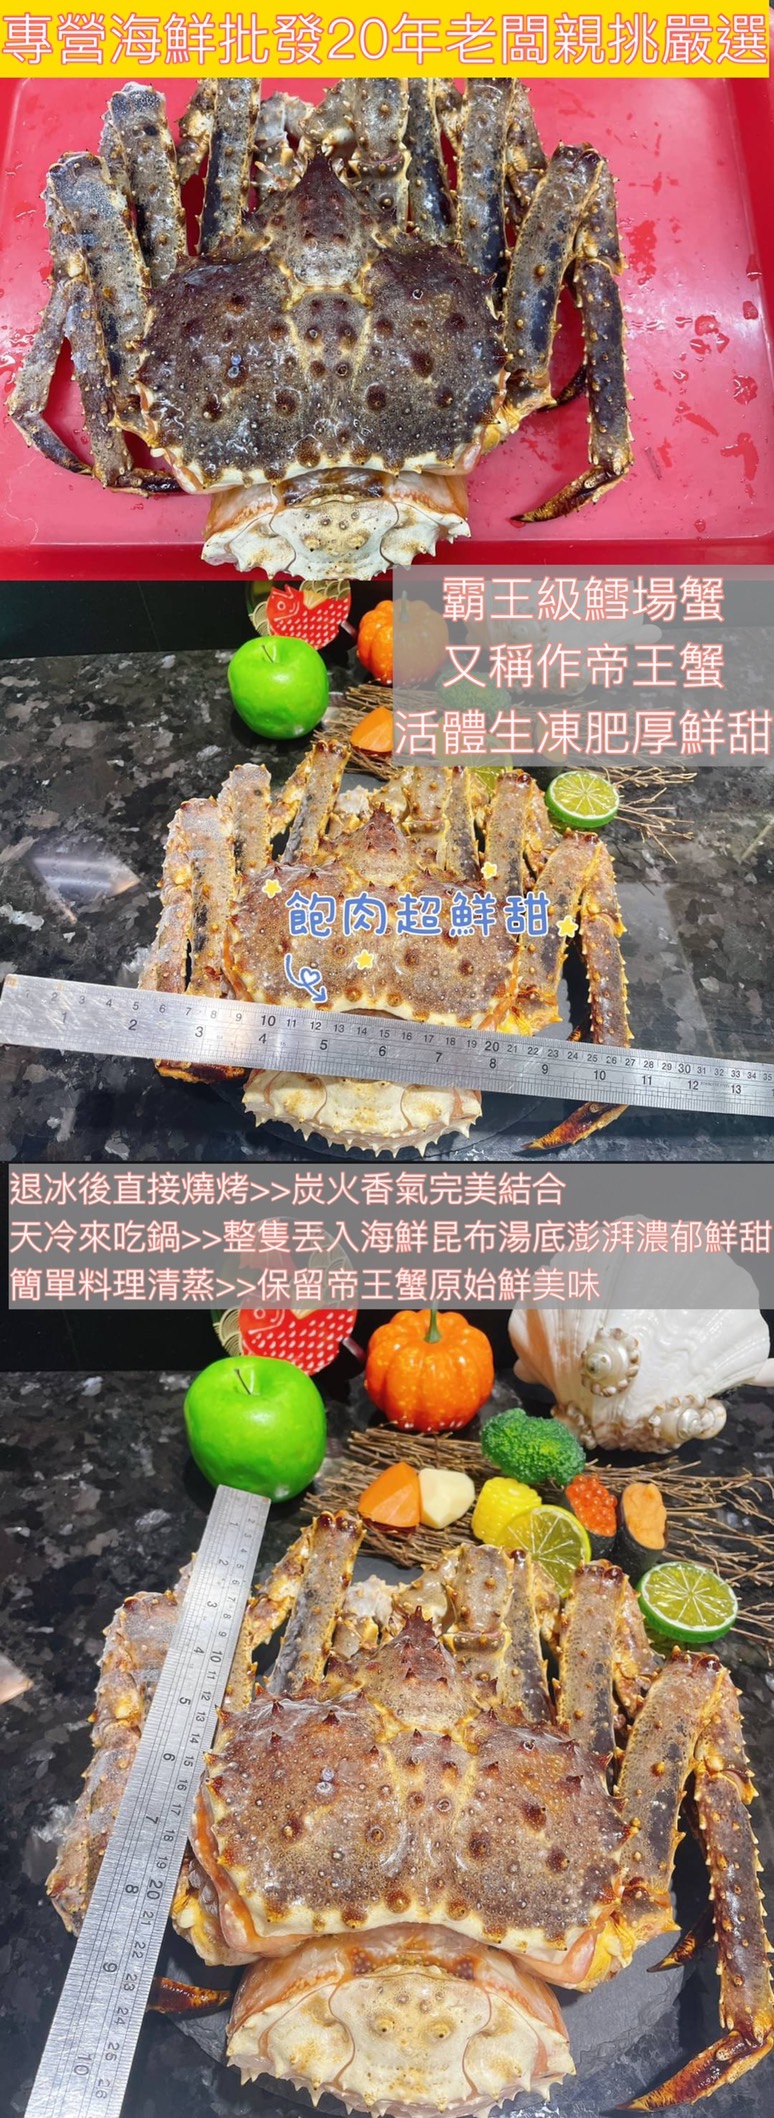 【鮮到貨】超巨奢華活凍日本鱈場蟹2200~2300克/隻